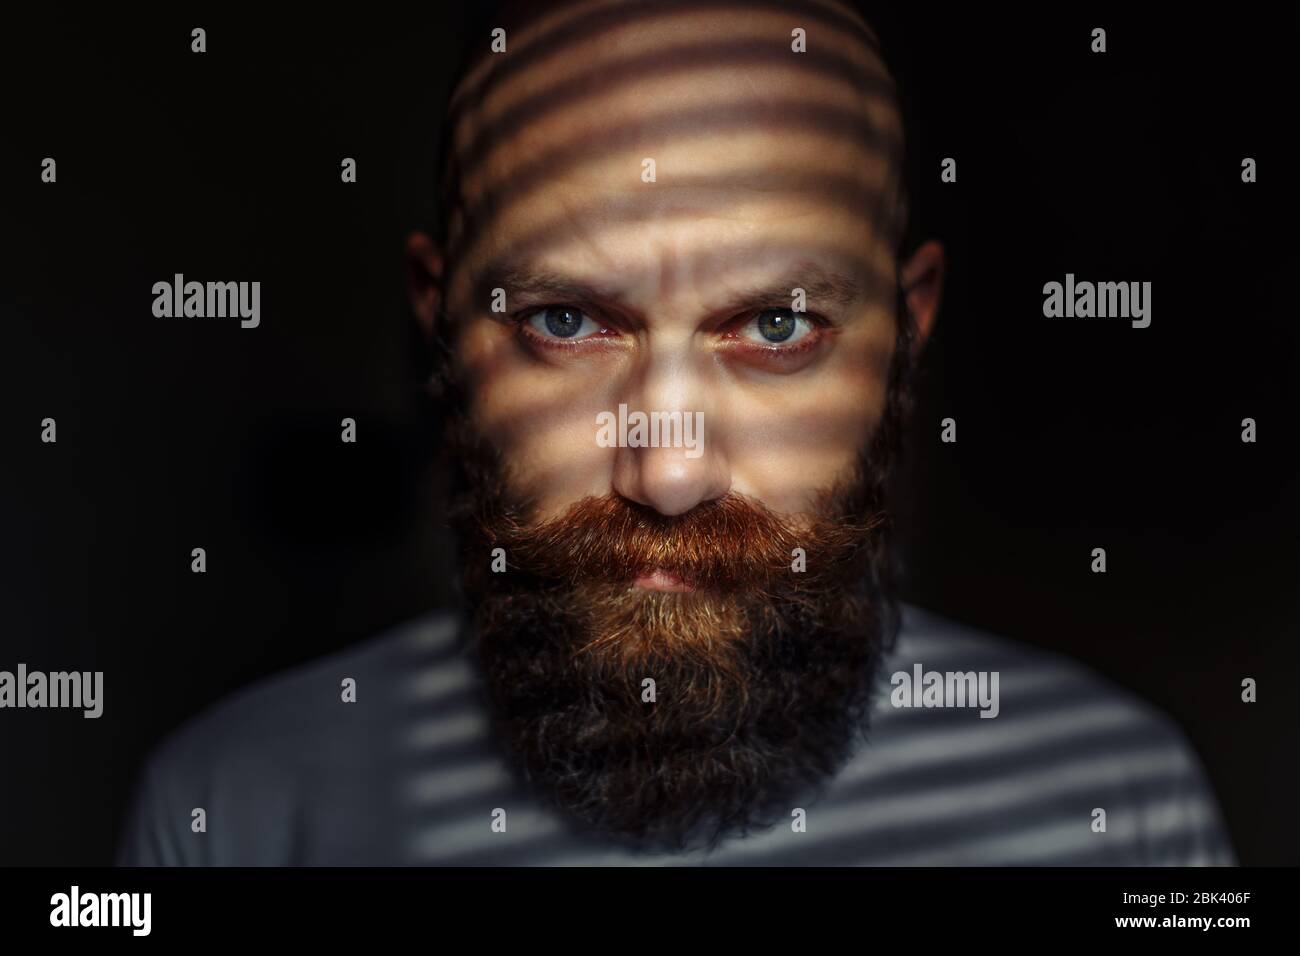 Ritratto ravvicinato di un uomo barbuto di mezza età con occhi espressivi e ombre a righe sul suo volto con sfondo nero Foto Stock